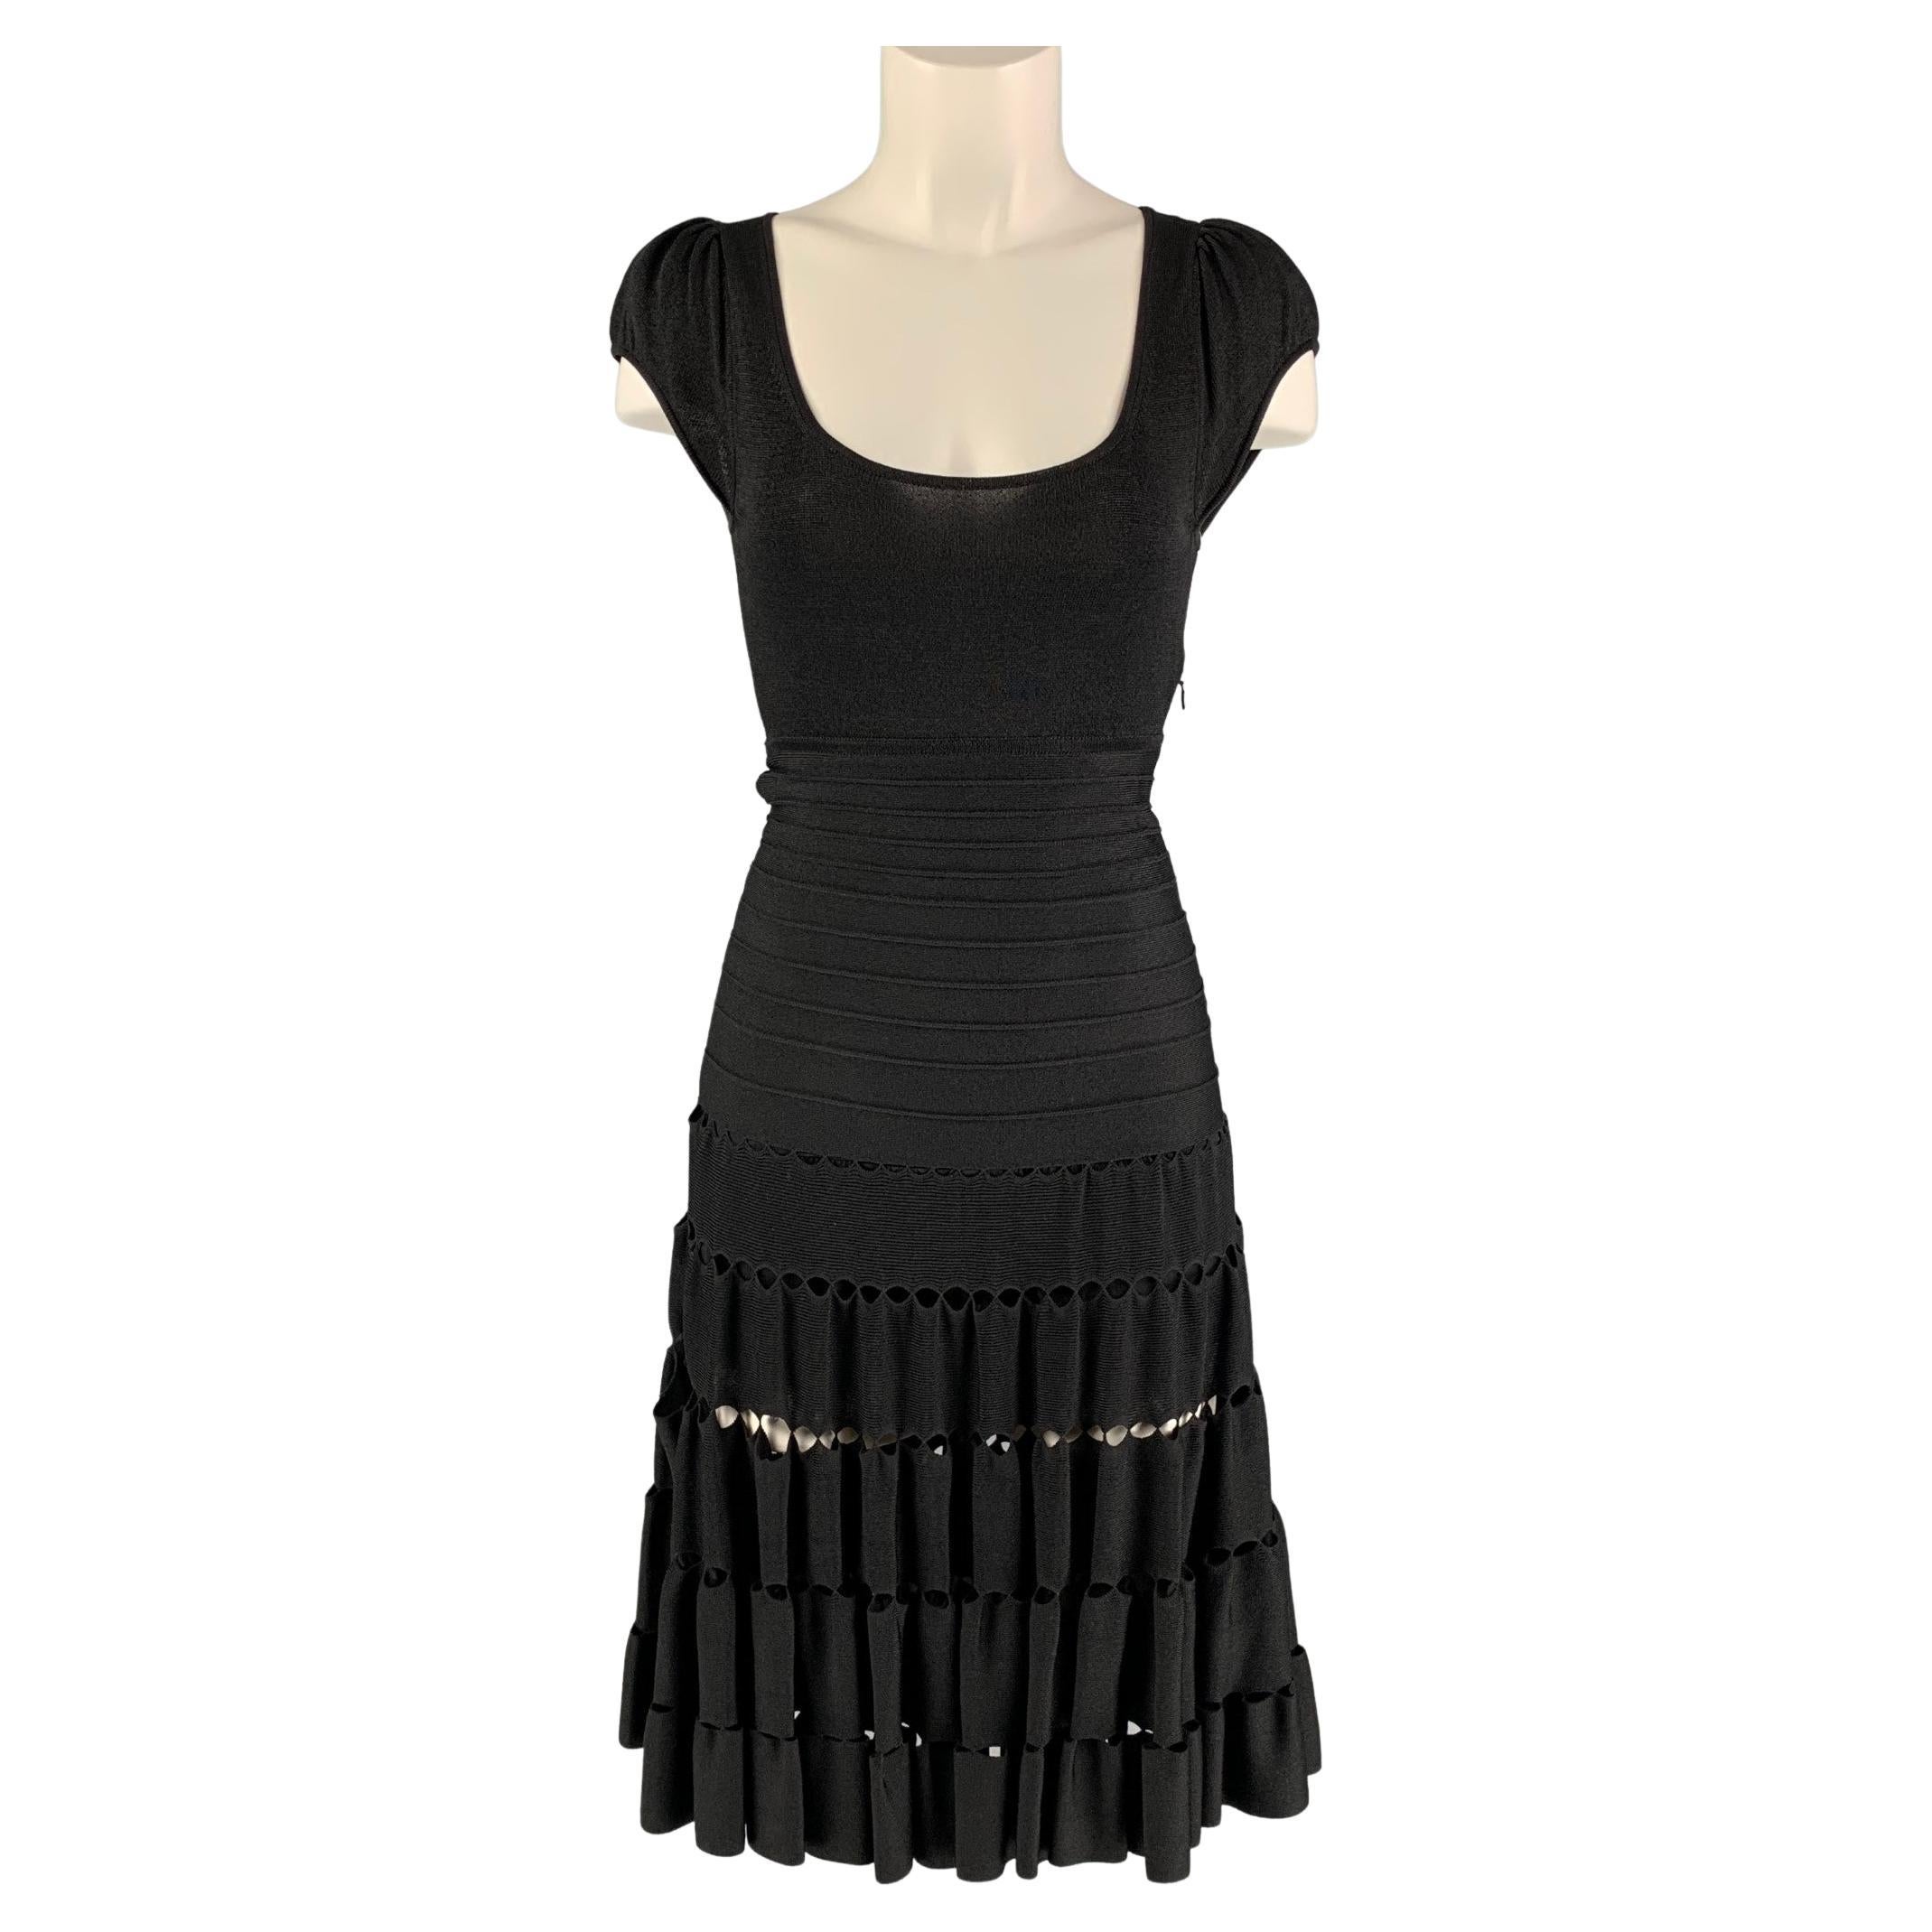 ZAC POSEN Size XS Black Viscose Blend Cut Out Dress